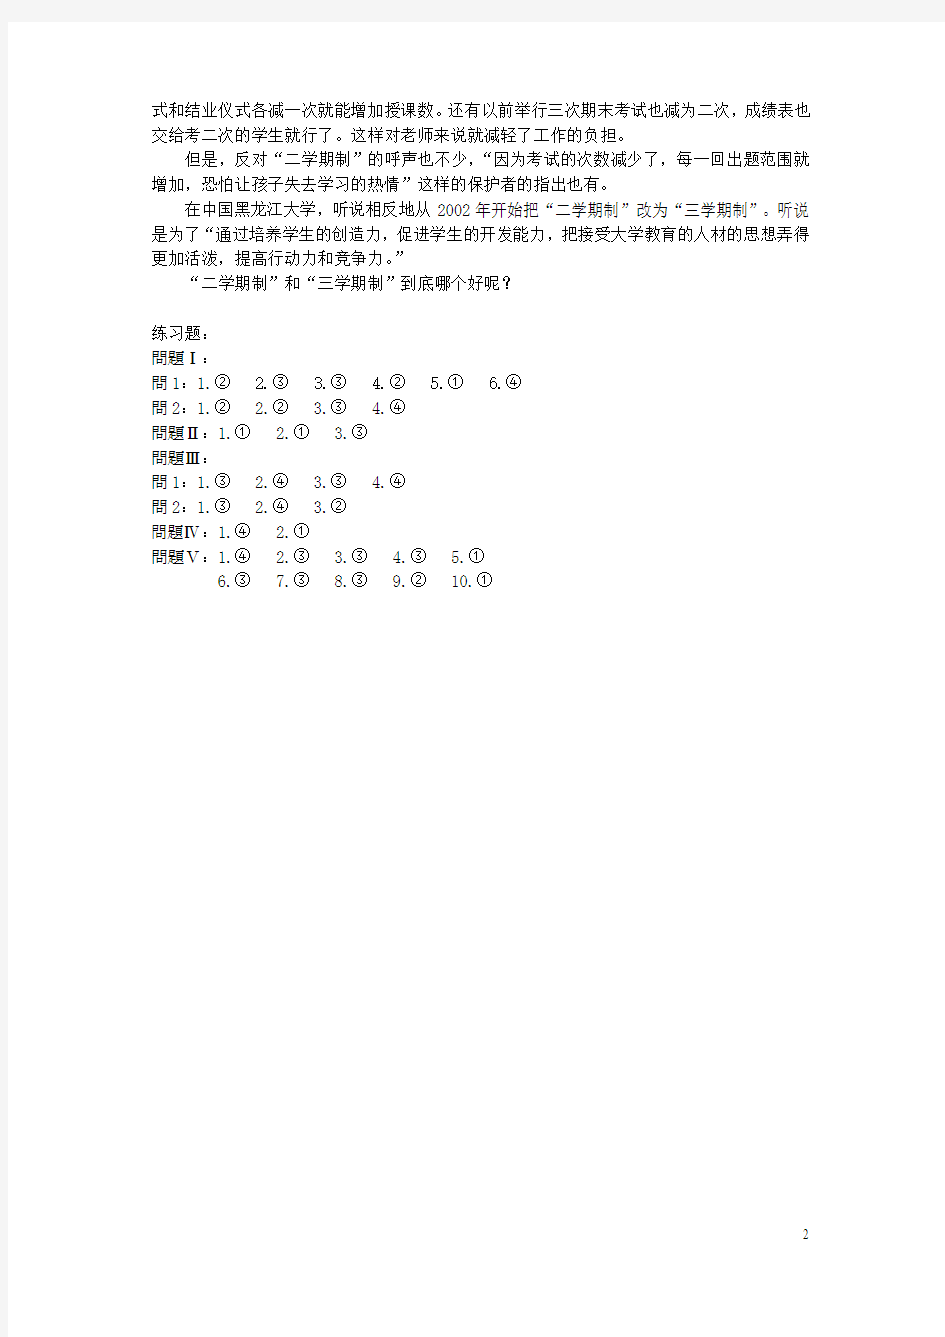 新编日语 3,4册中文翻译和答案